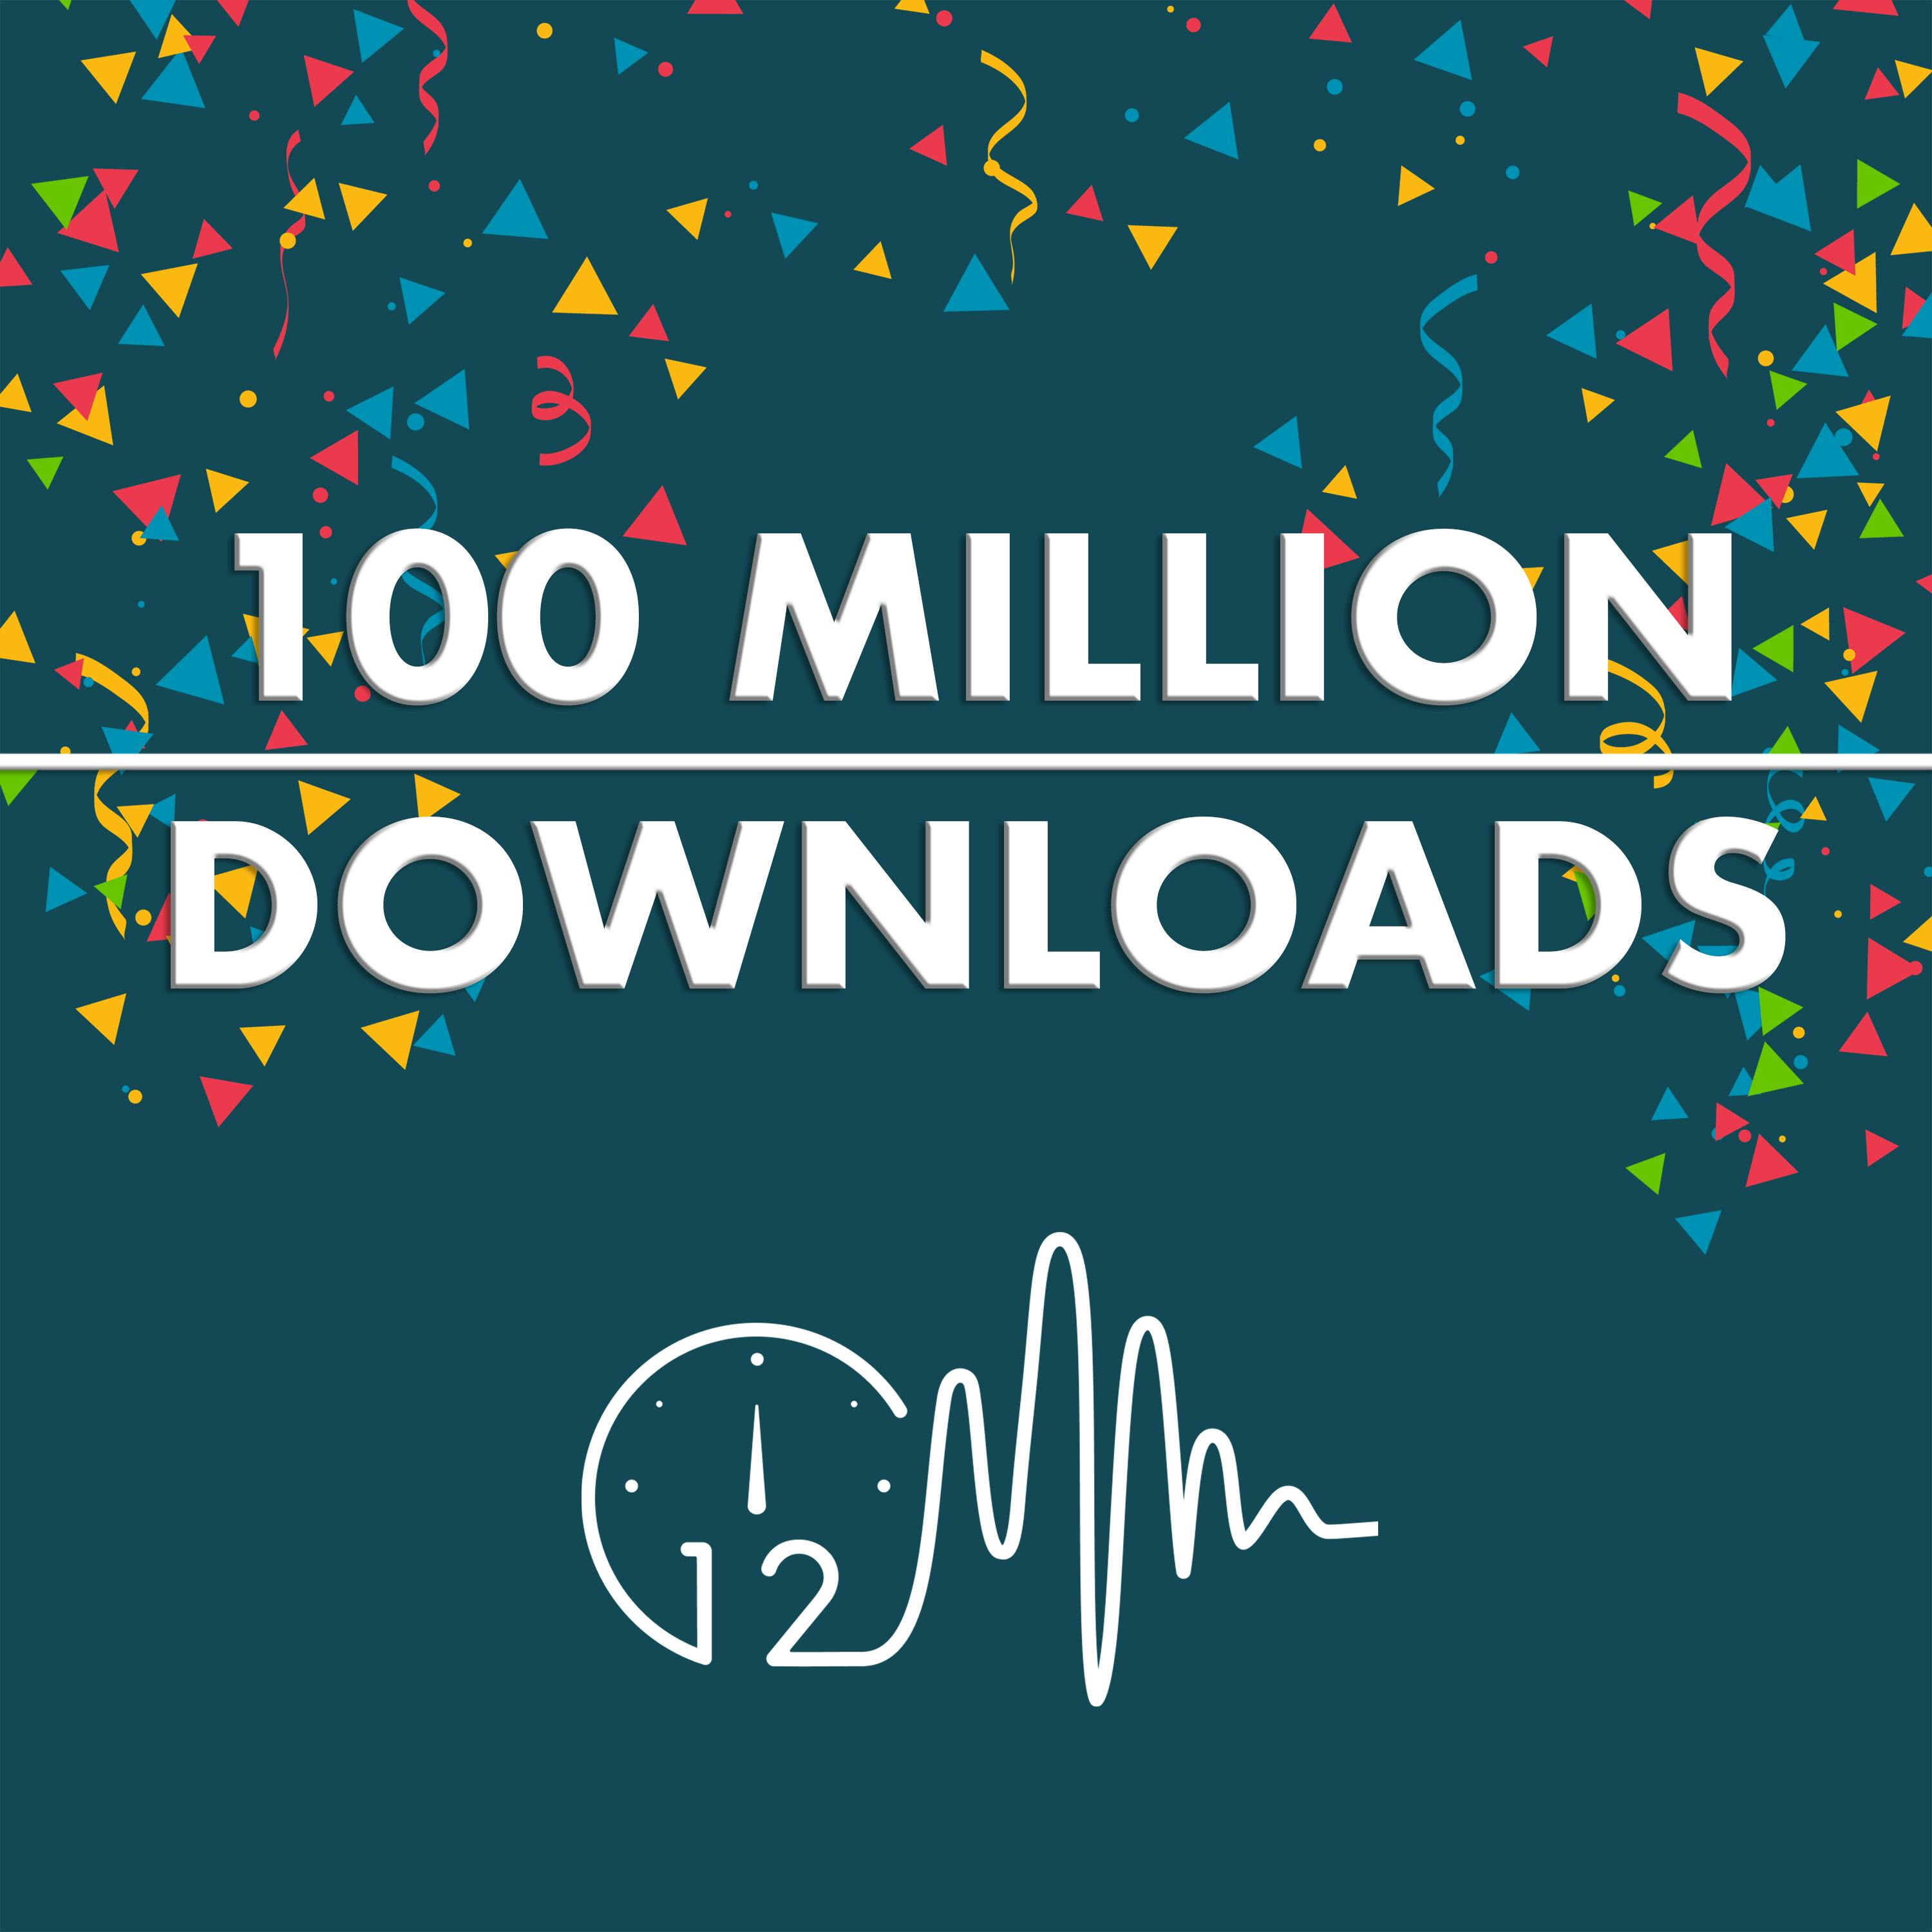 100 Million Downloads!? 🎉